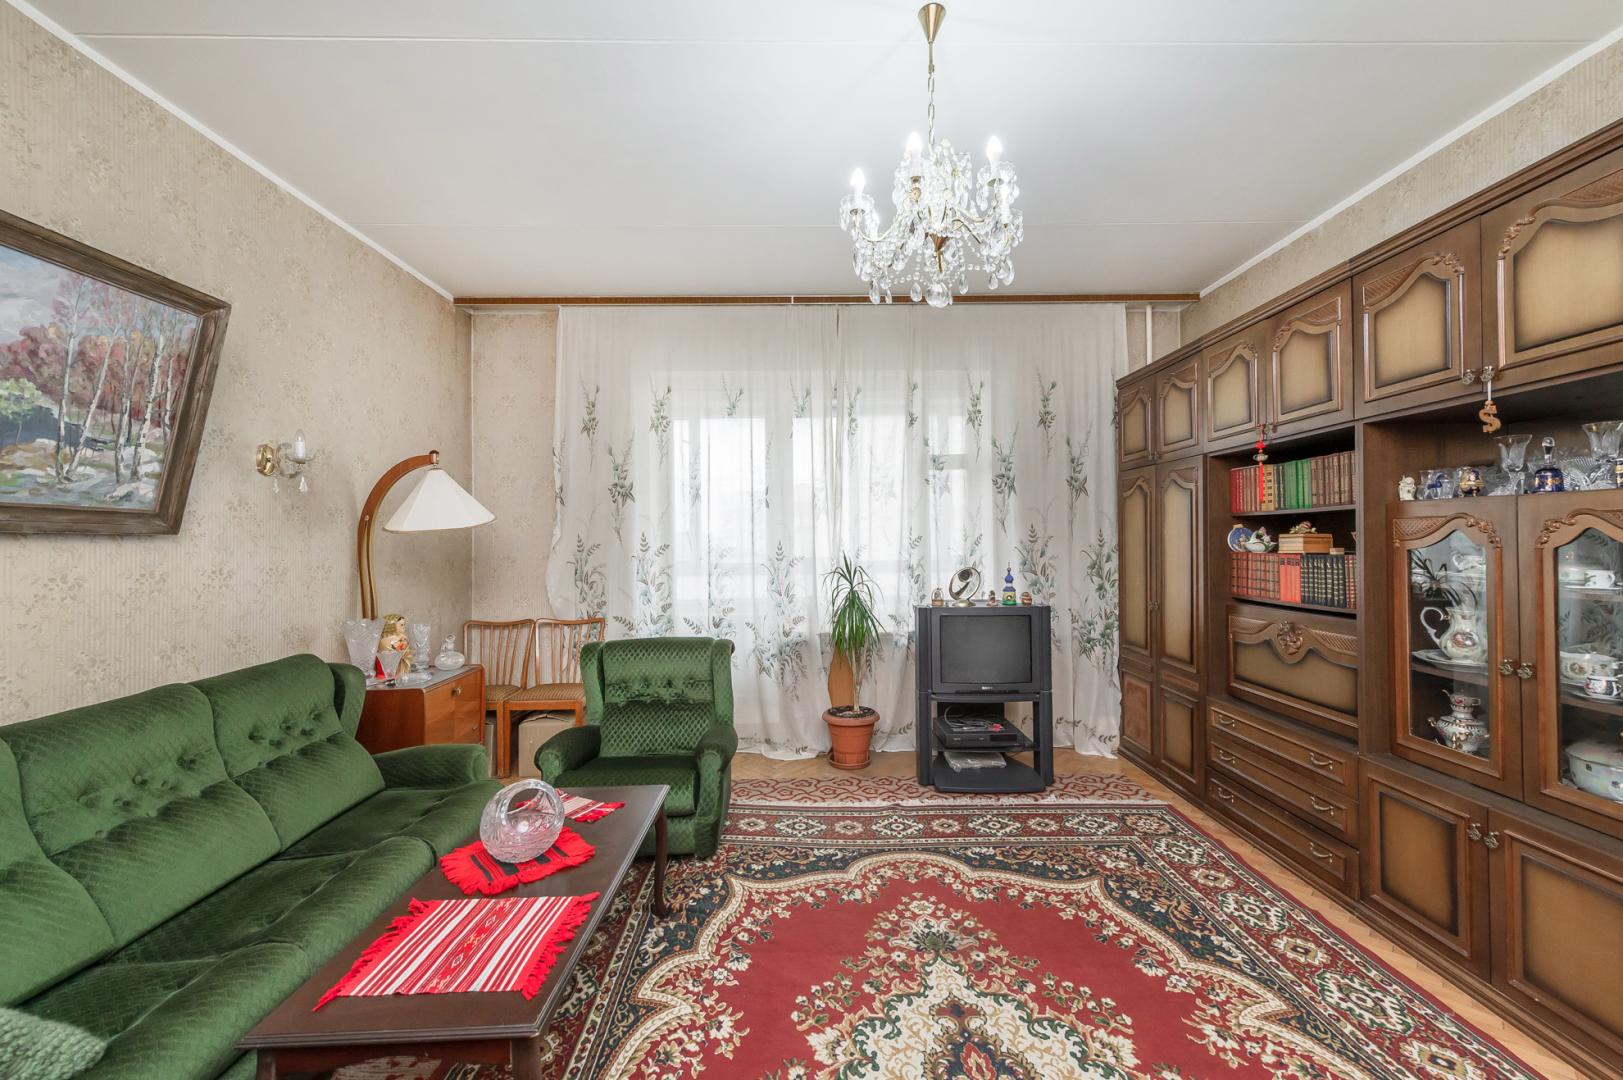 Продам квартиру в Москве по адресу Астраханский переулок, 10/36, площадь 821 квм Недвижимость Москва (Россия) Продается большая, комфортабельная квартира в ведомственном, кирпичном доме 1990 года постройки